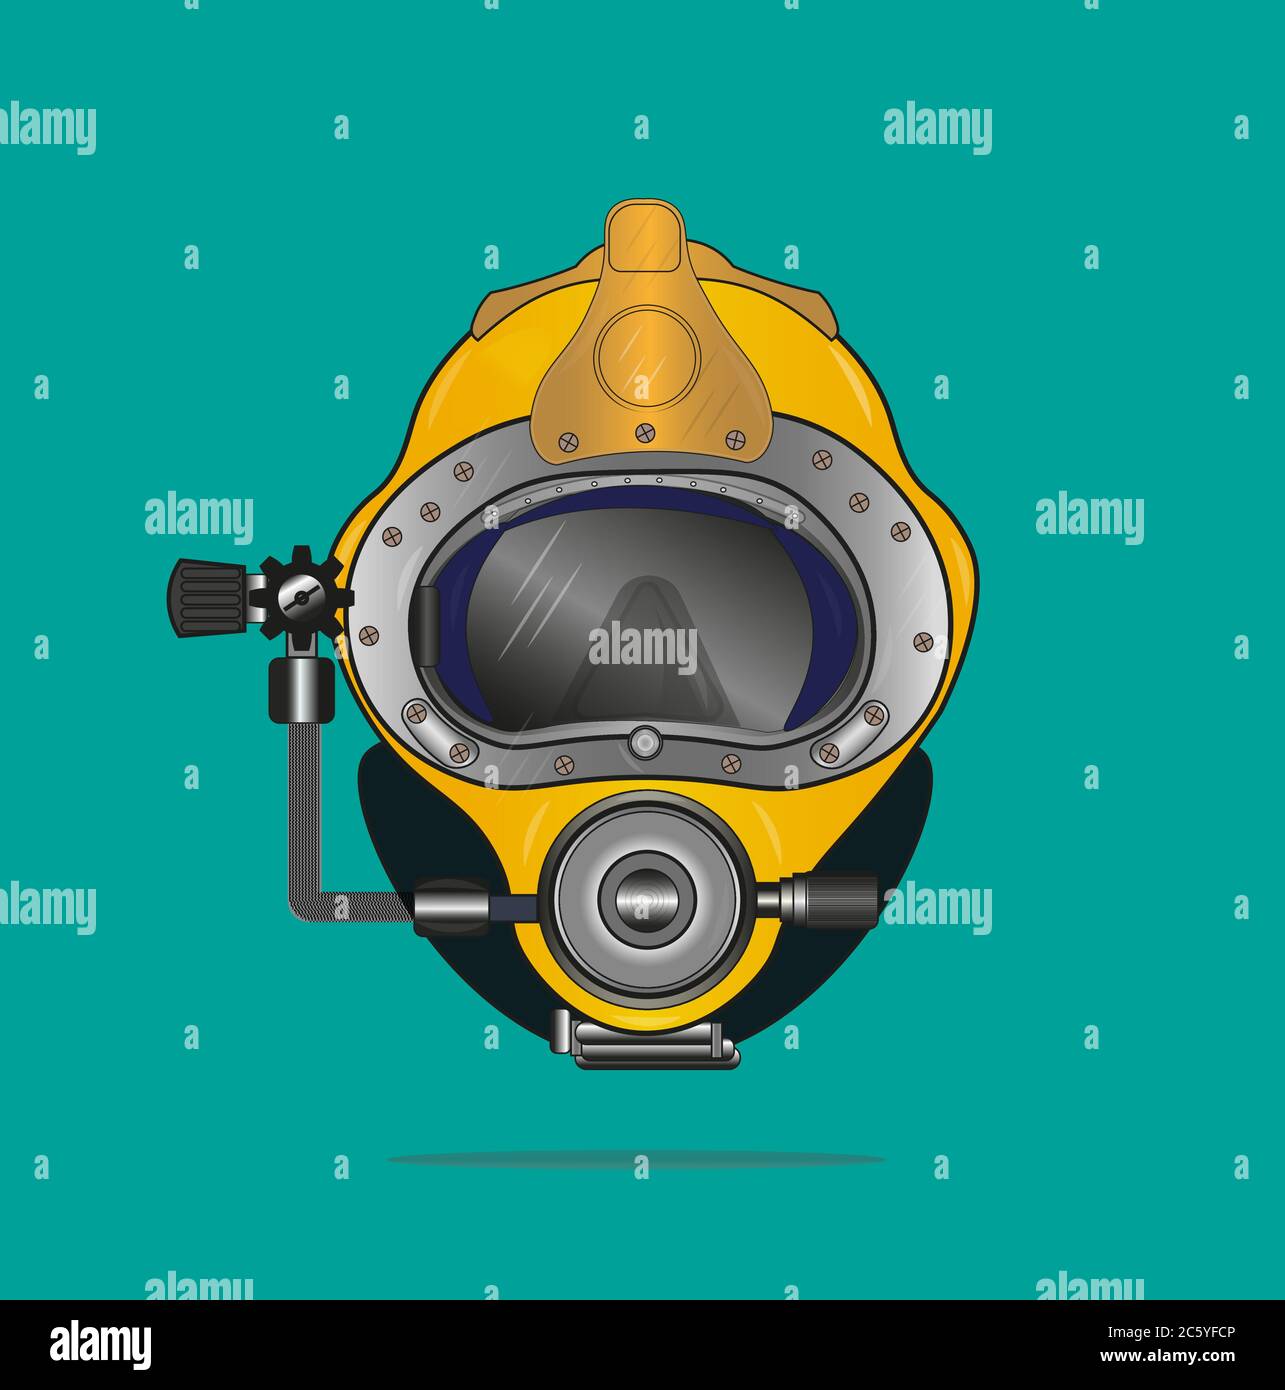 Kirby Morgan Dive Systems - Kirby Morgan Dive Systems